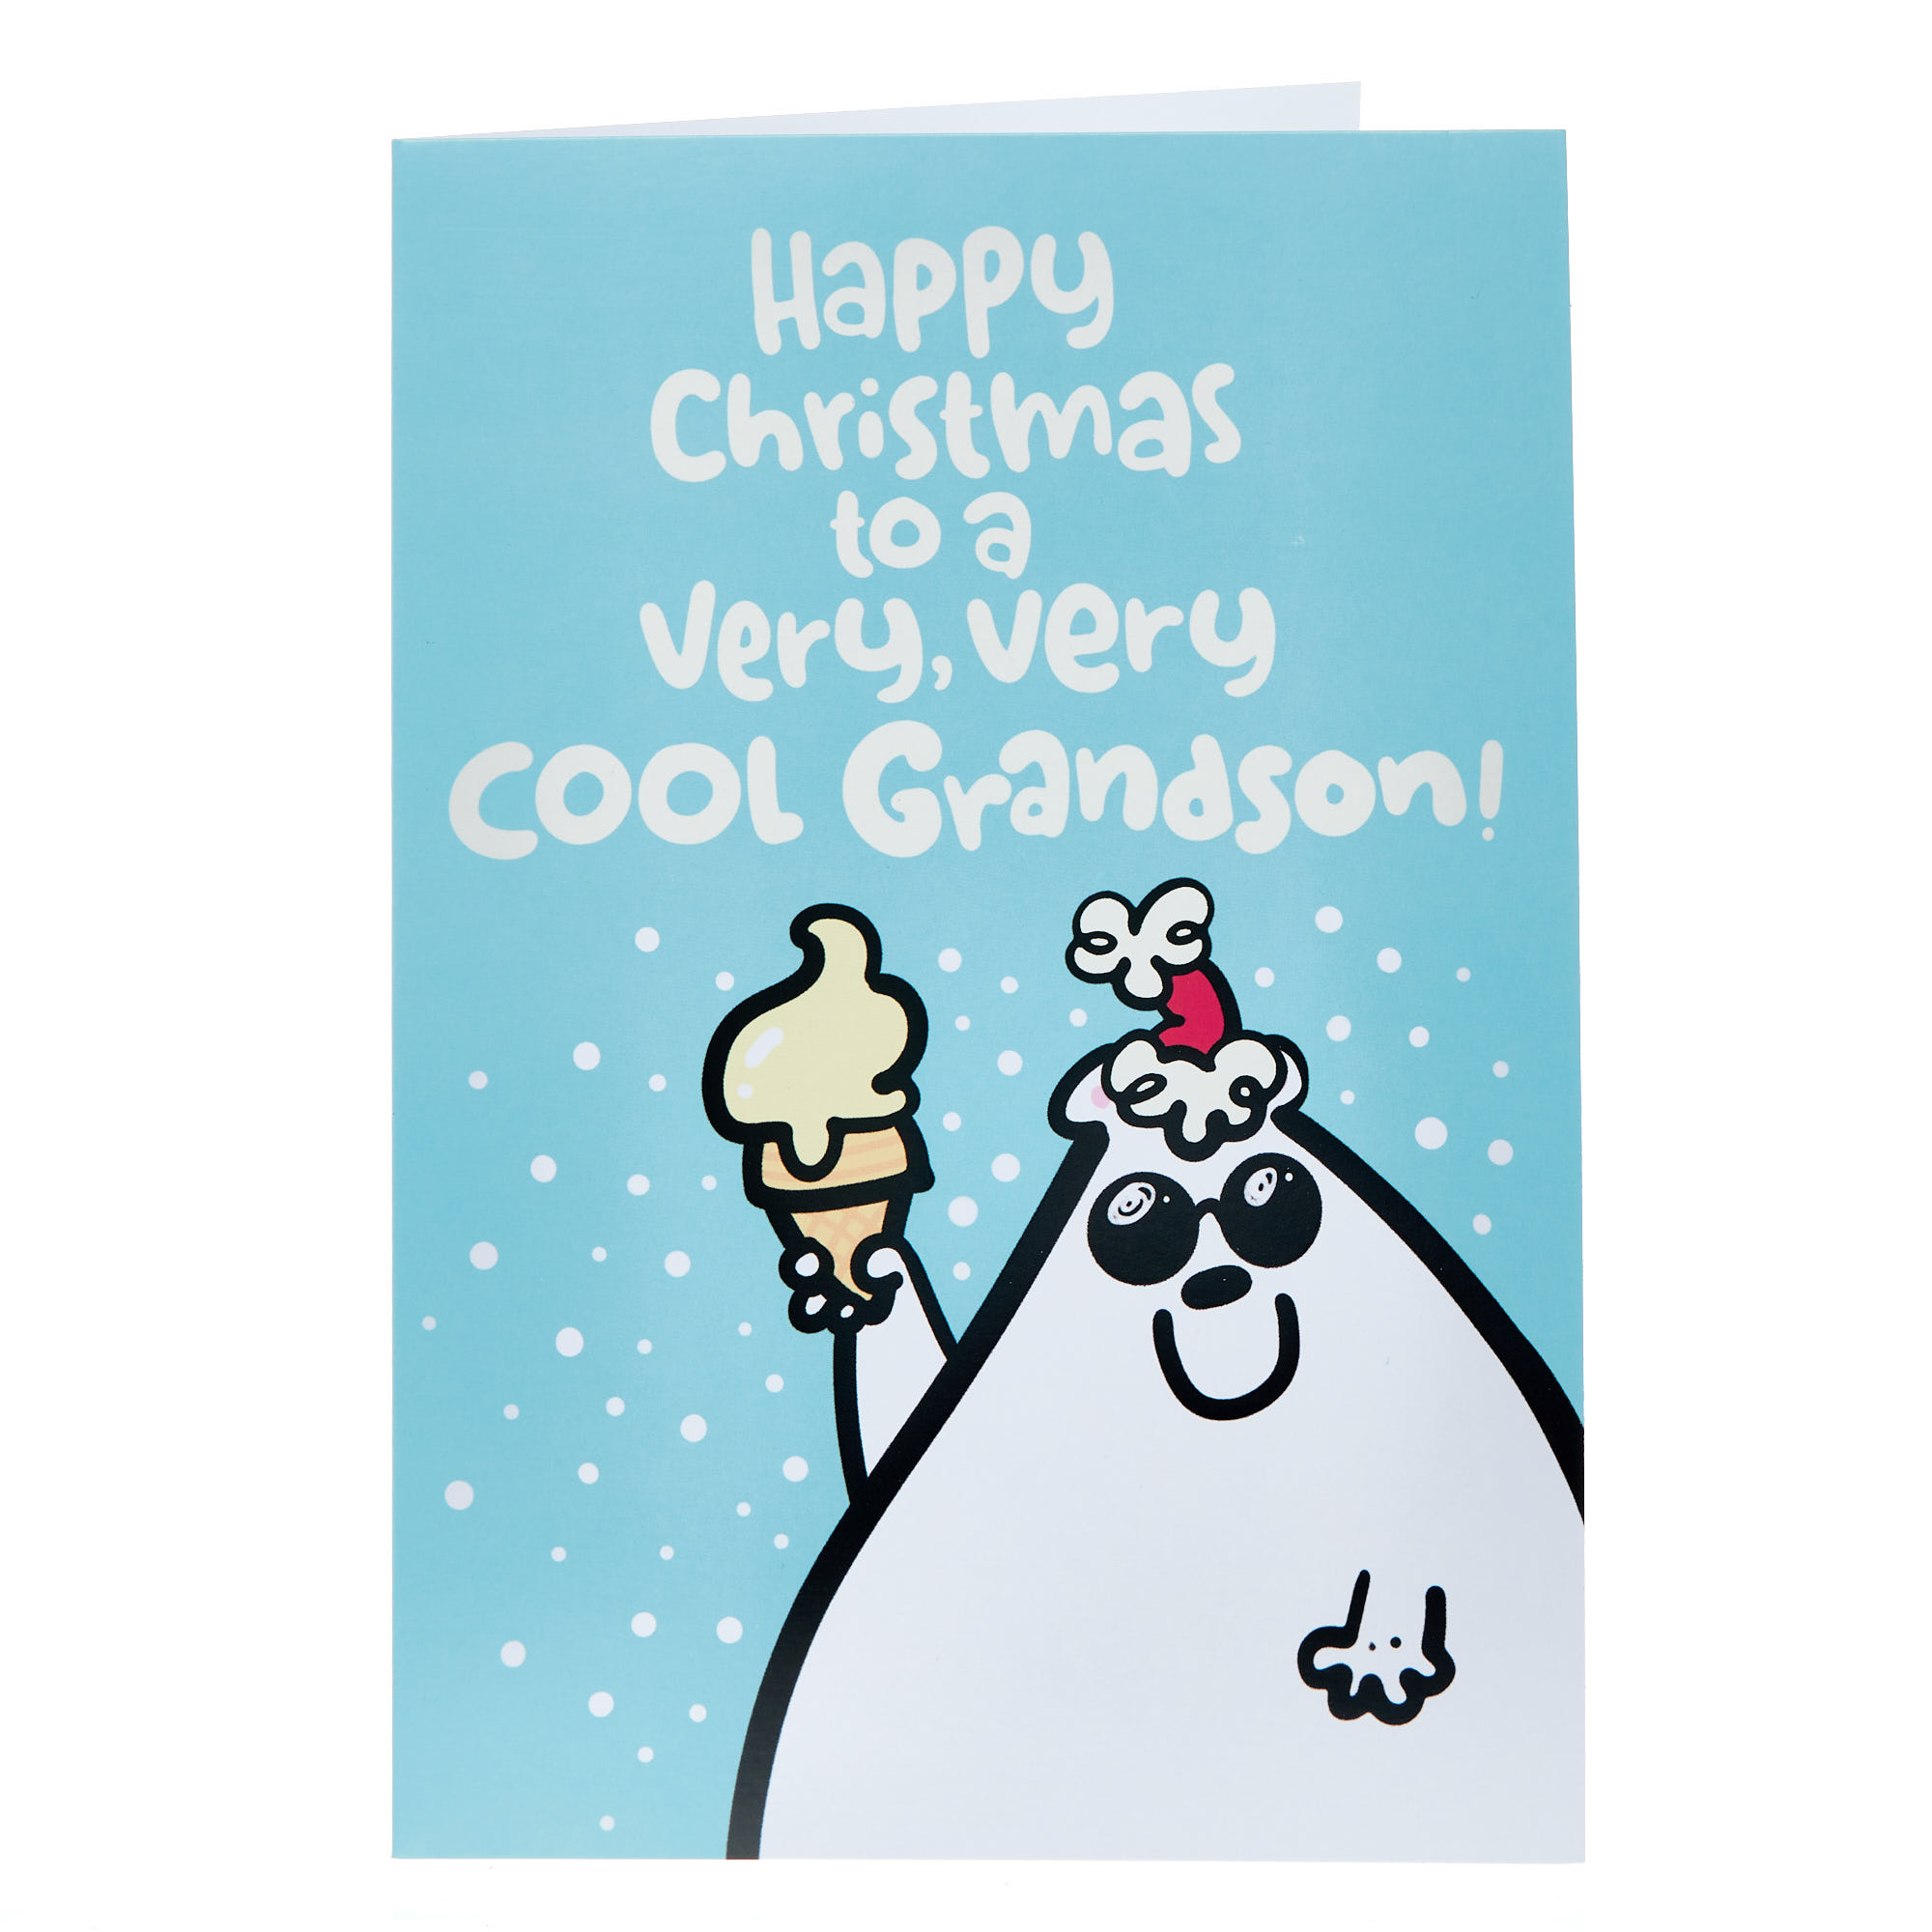 Grandson Fruitloops Cool Christmas Card